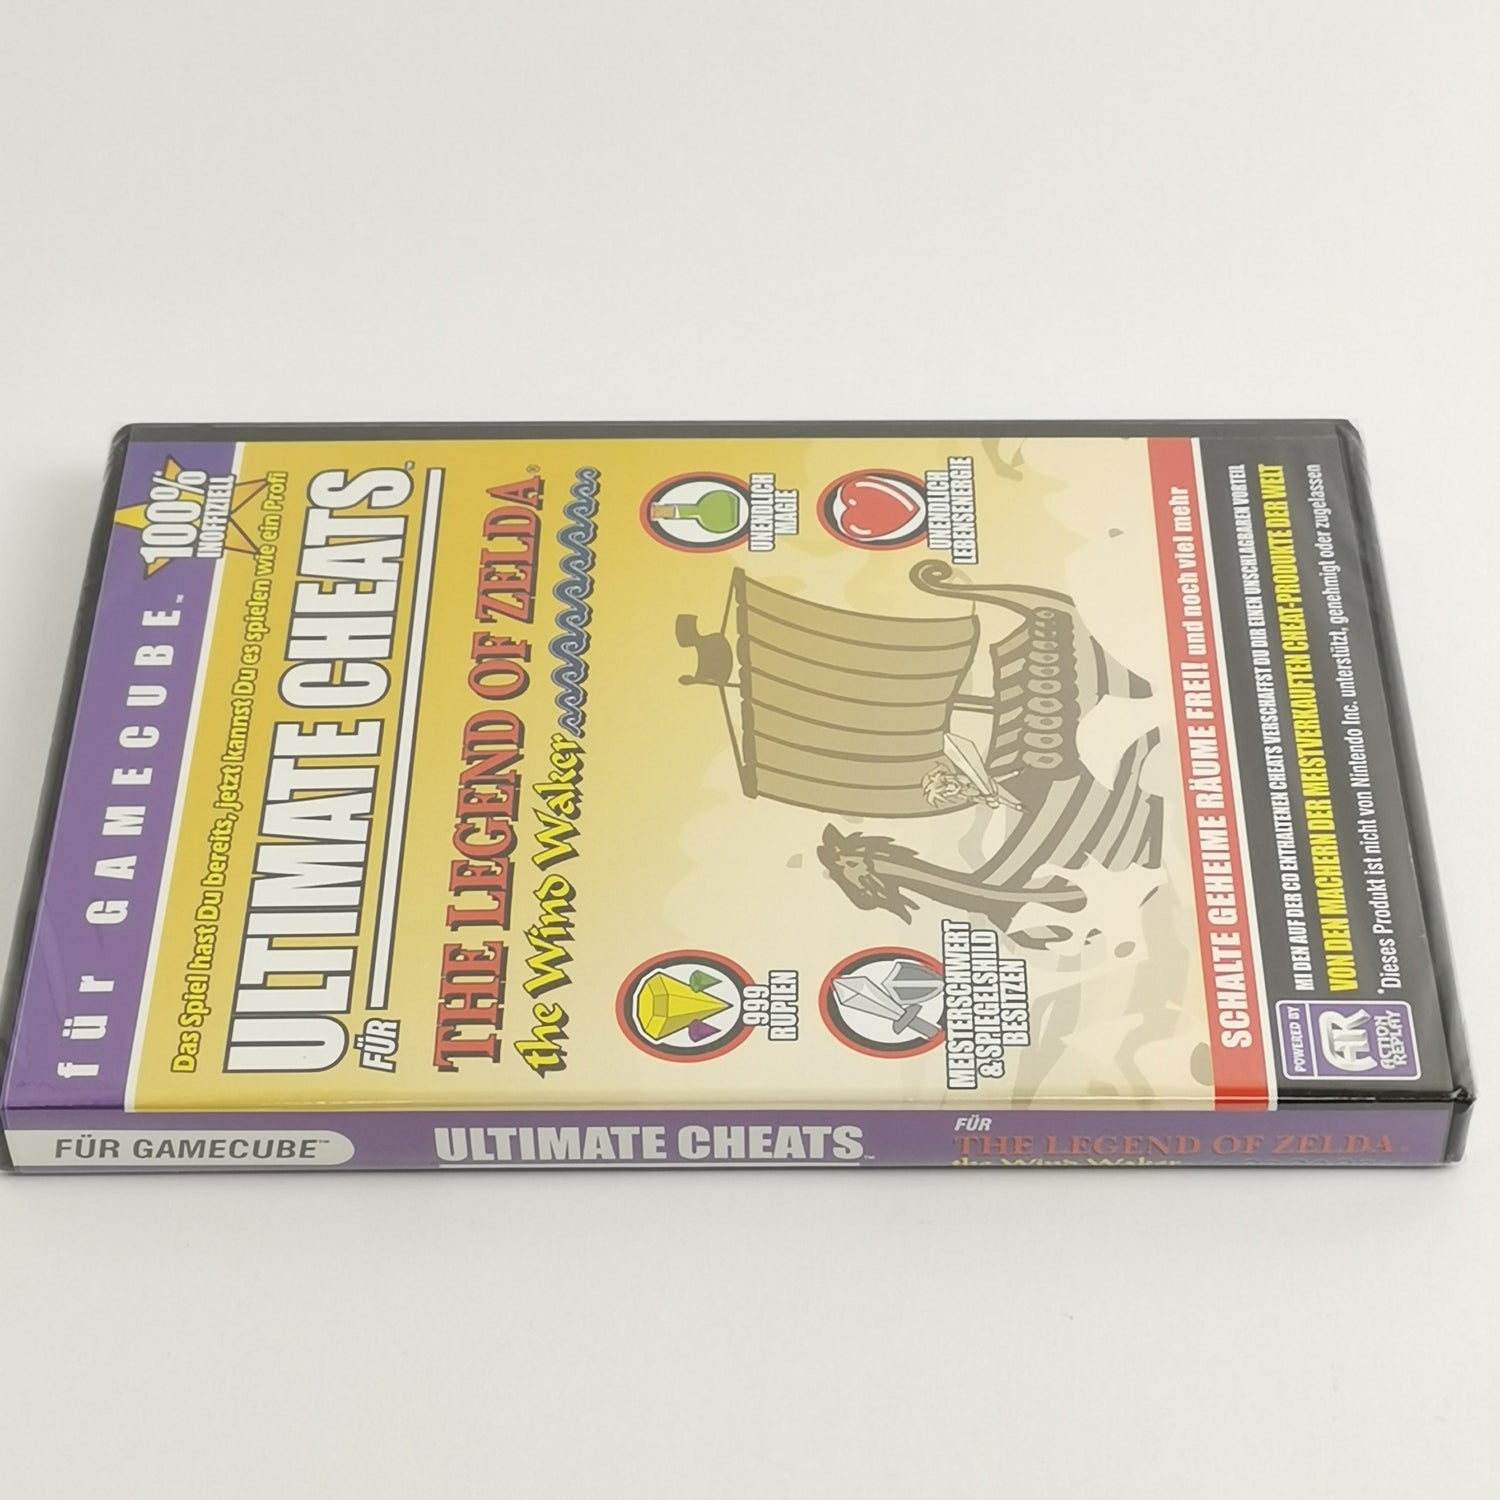 Nintendo Gamecube : Ultimate Cheat Codes - Zelda The Windwaker NEW SEALED